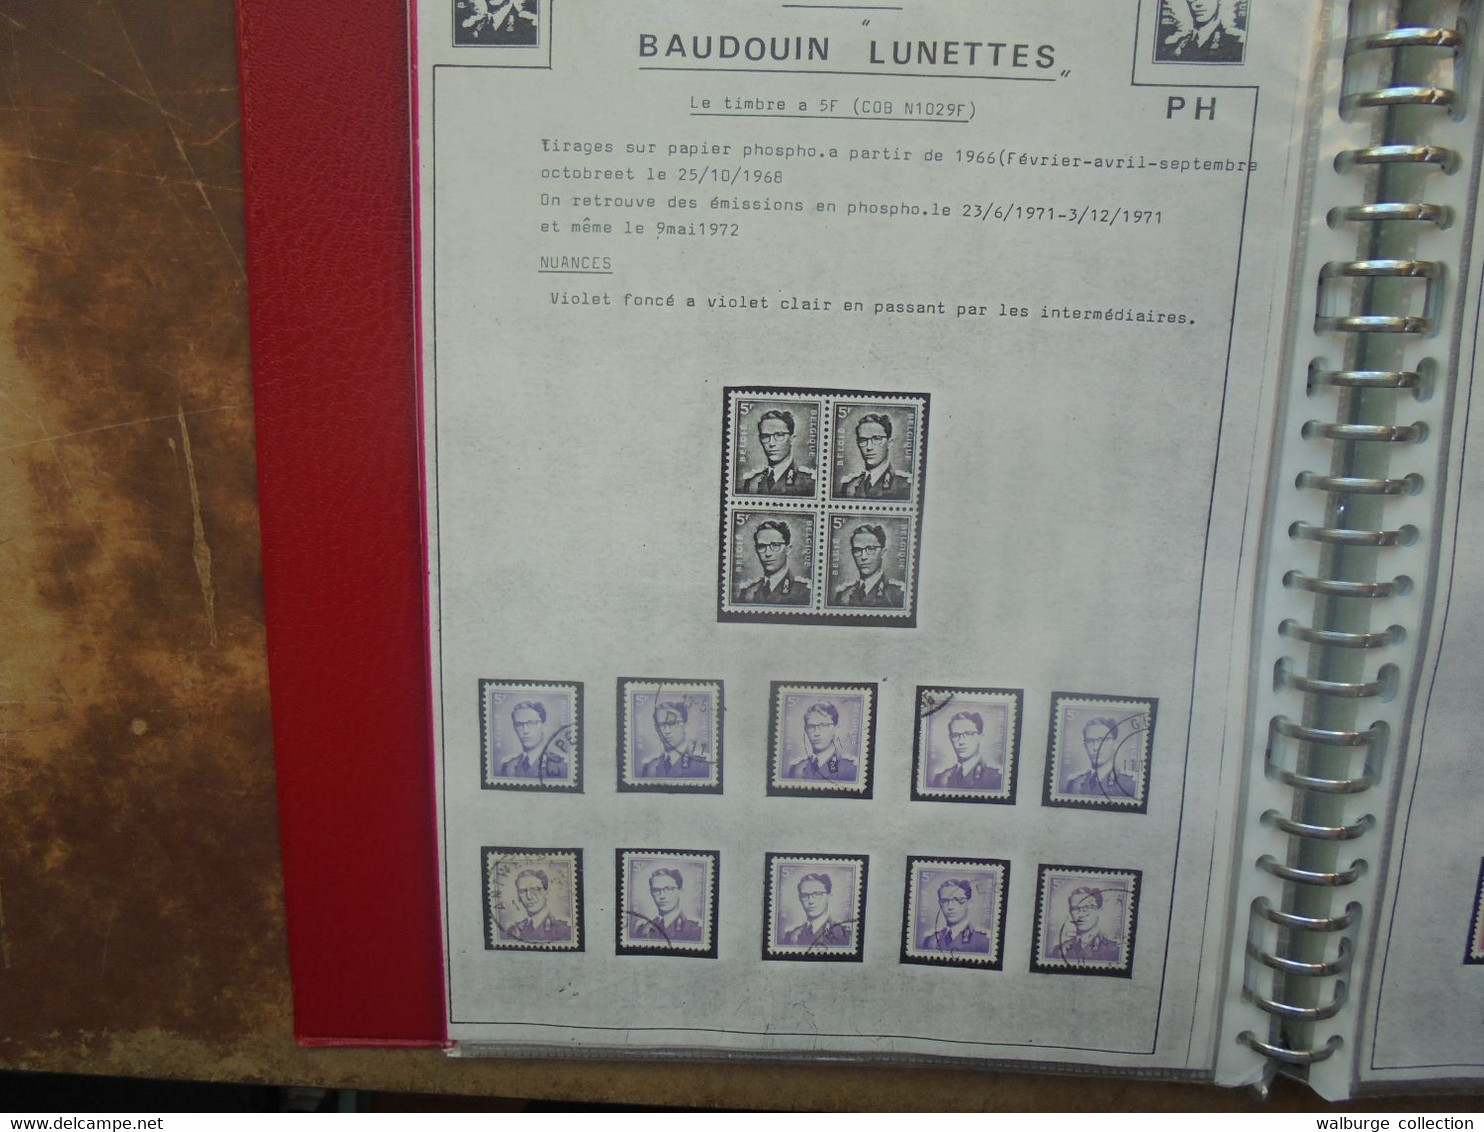 BELGIQUE BELLE ETUDE Baudouin 1er+Velghe+Lion Héraldique Nuances de papiers-Courriers (RH.87) 1 KILO 200